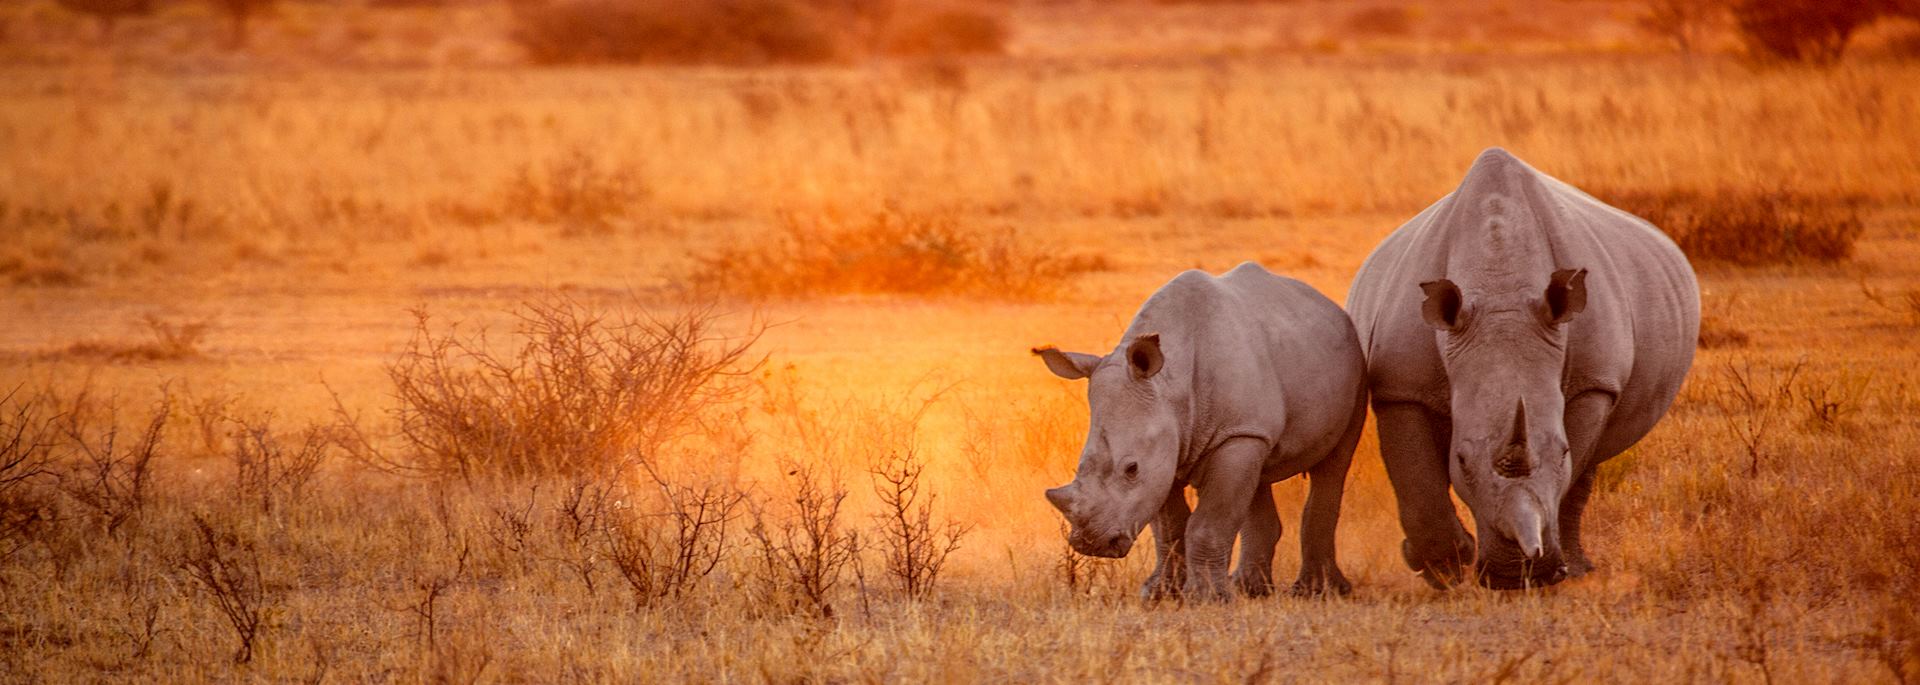 Rhino in Etosha National Park